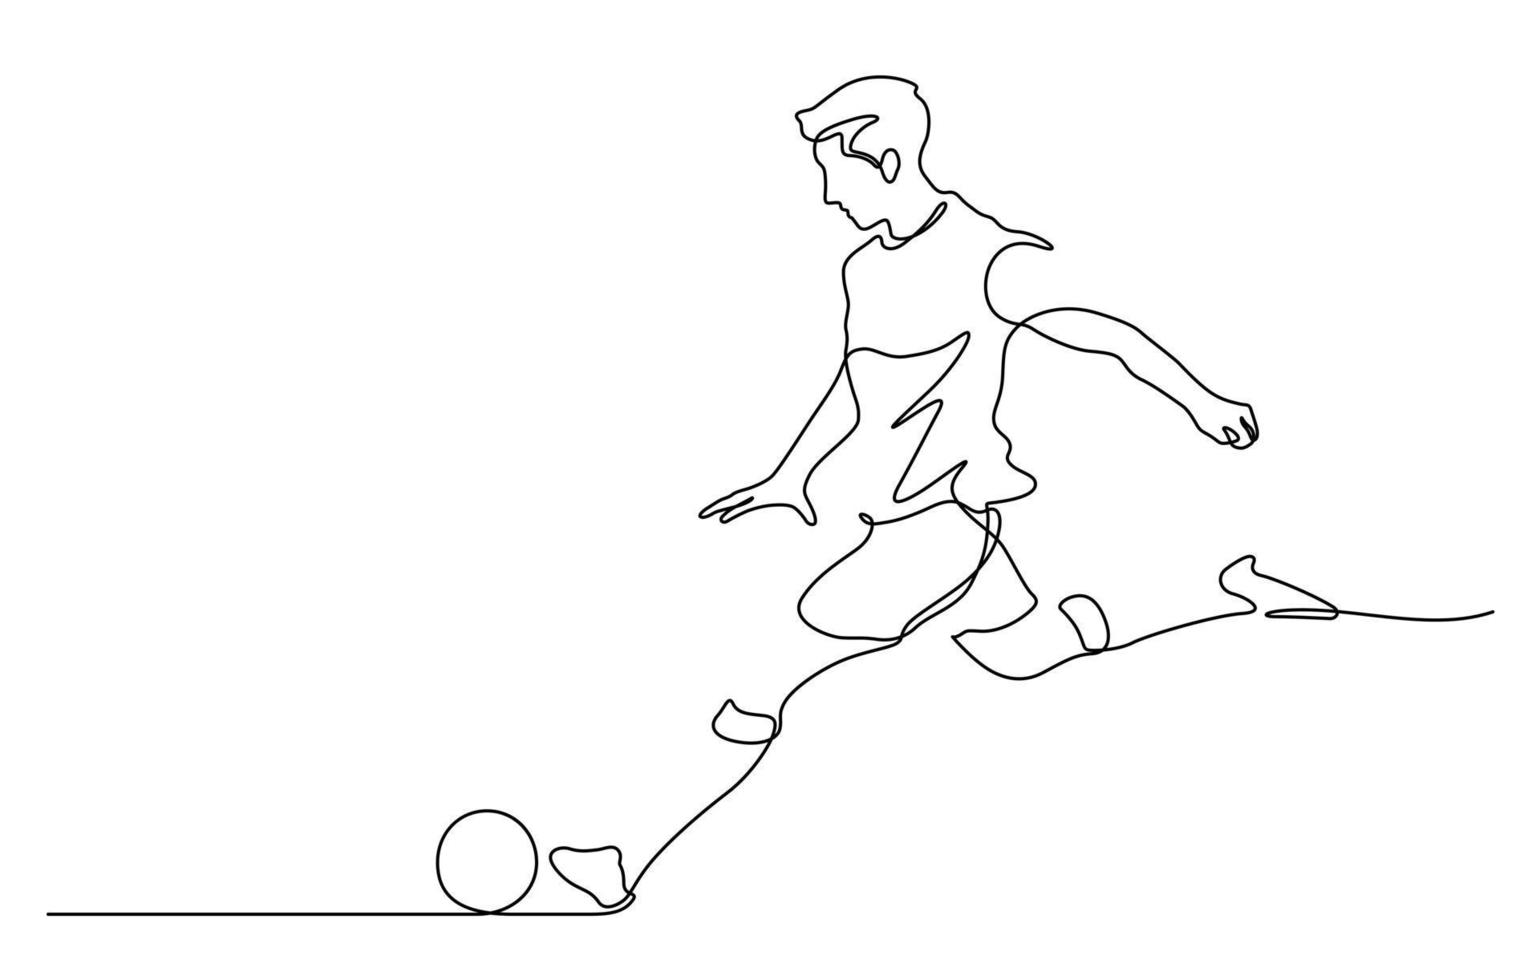 dibujo de línea continua del hombre disparando ilustración de vector de fútbol